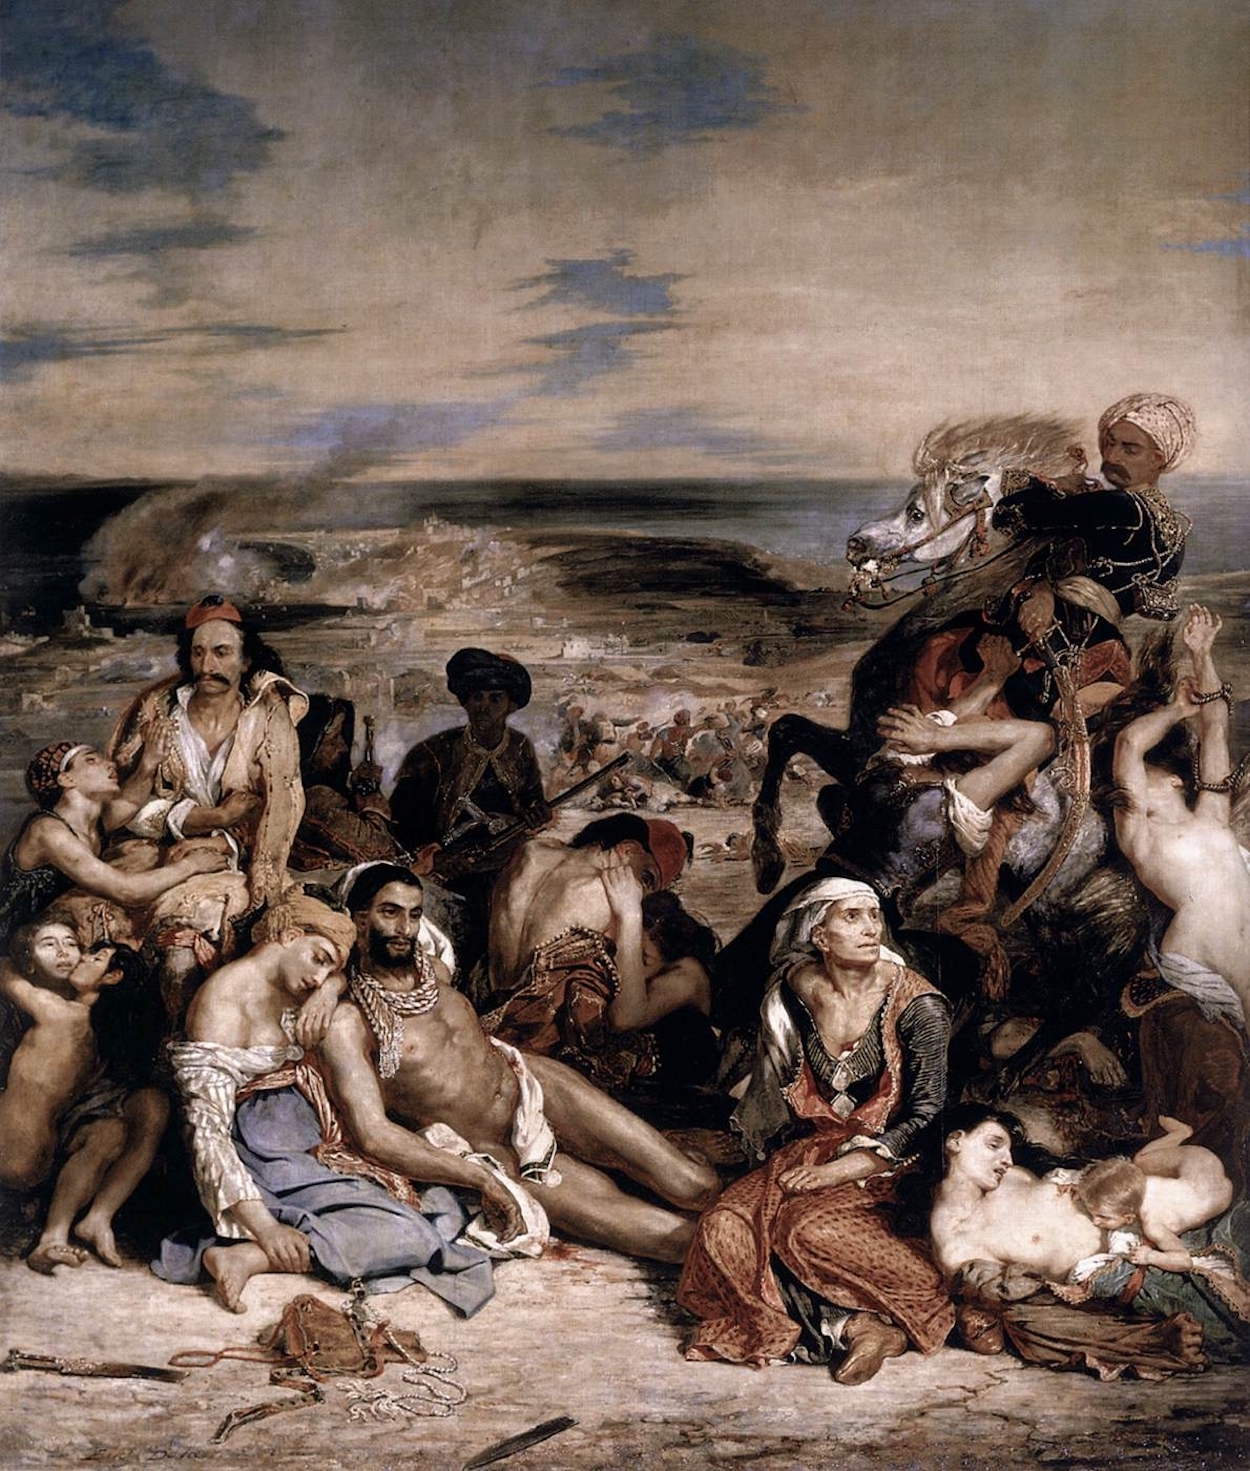 Massacro di Chio by Eugène Delacroix - 1824 - 419 x 354 cm Musée du Louvre